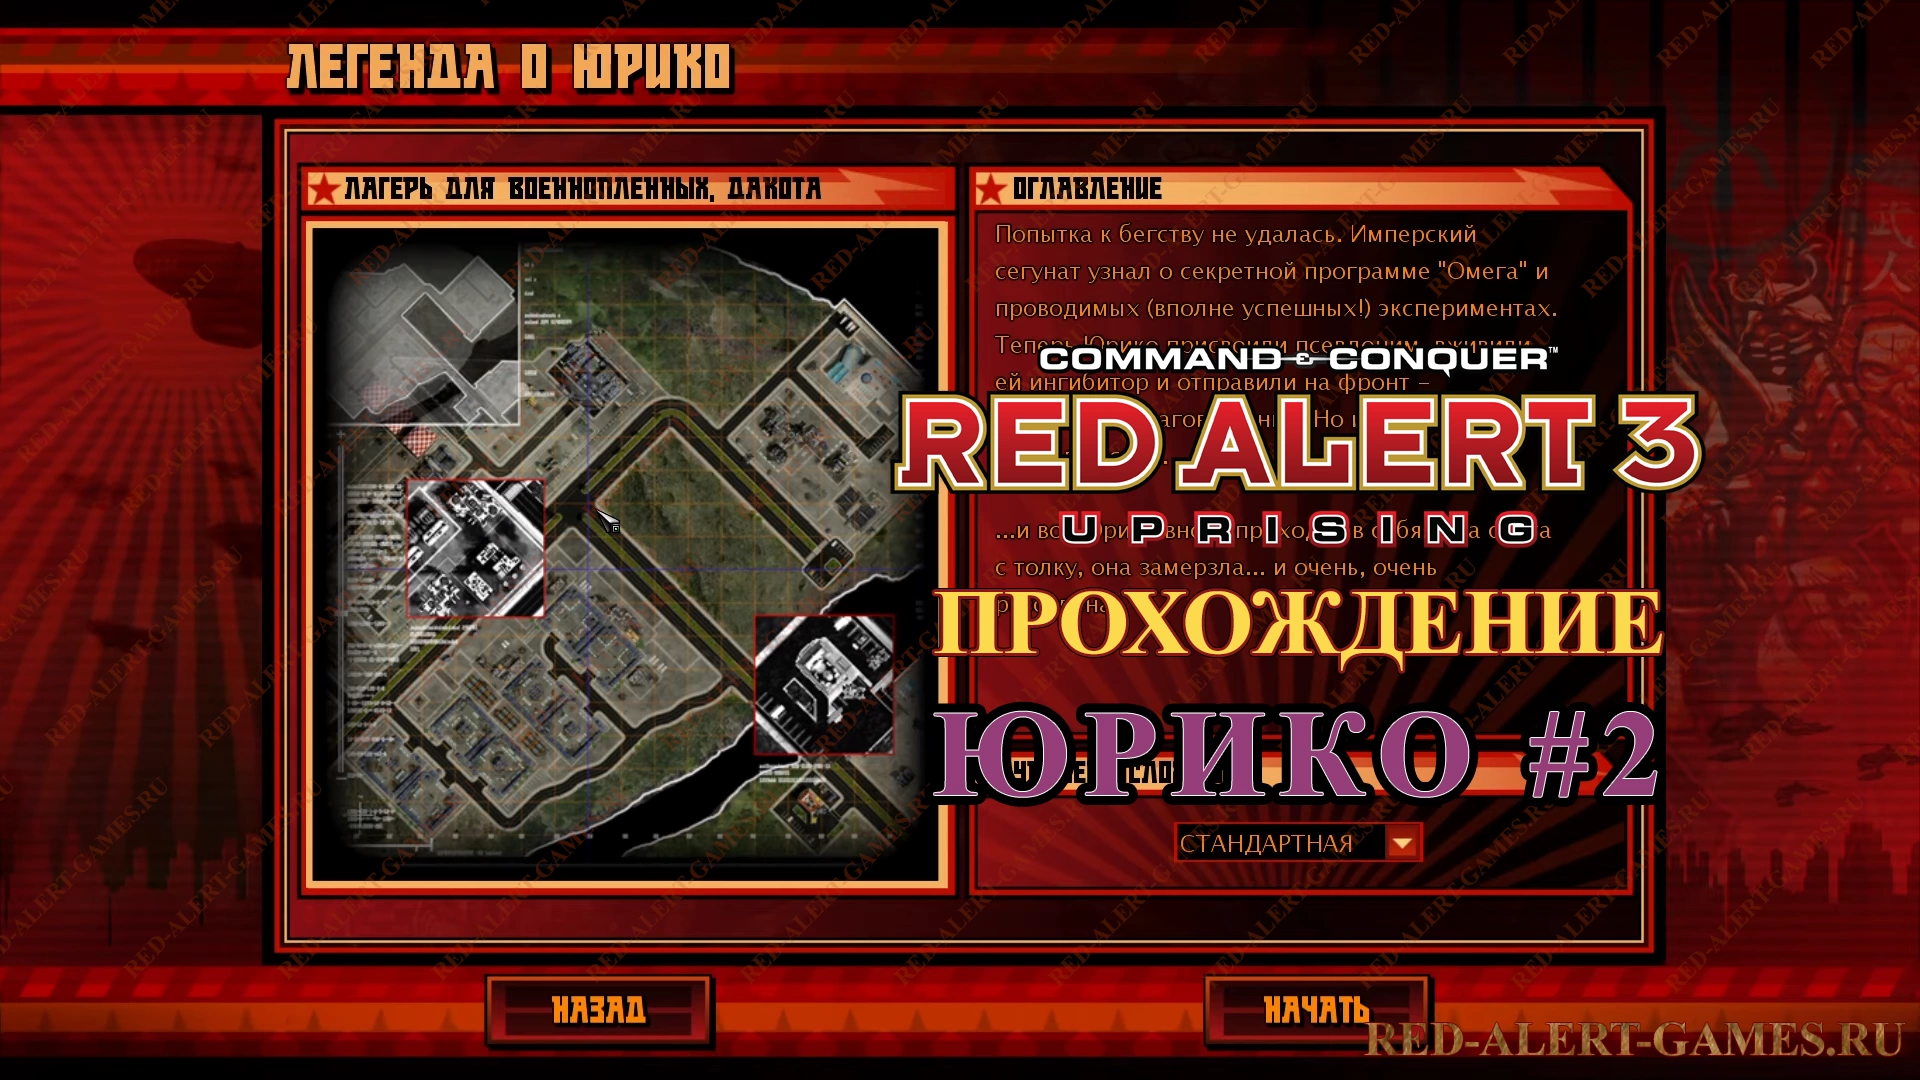 Red Alert 3 Uprising Прохождение Юрико - Миссия вторая: расплата